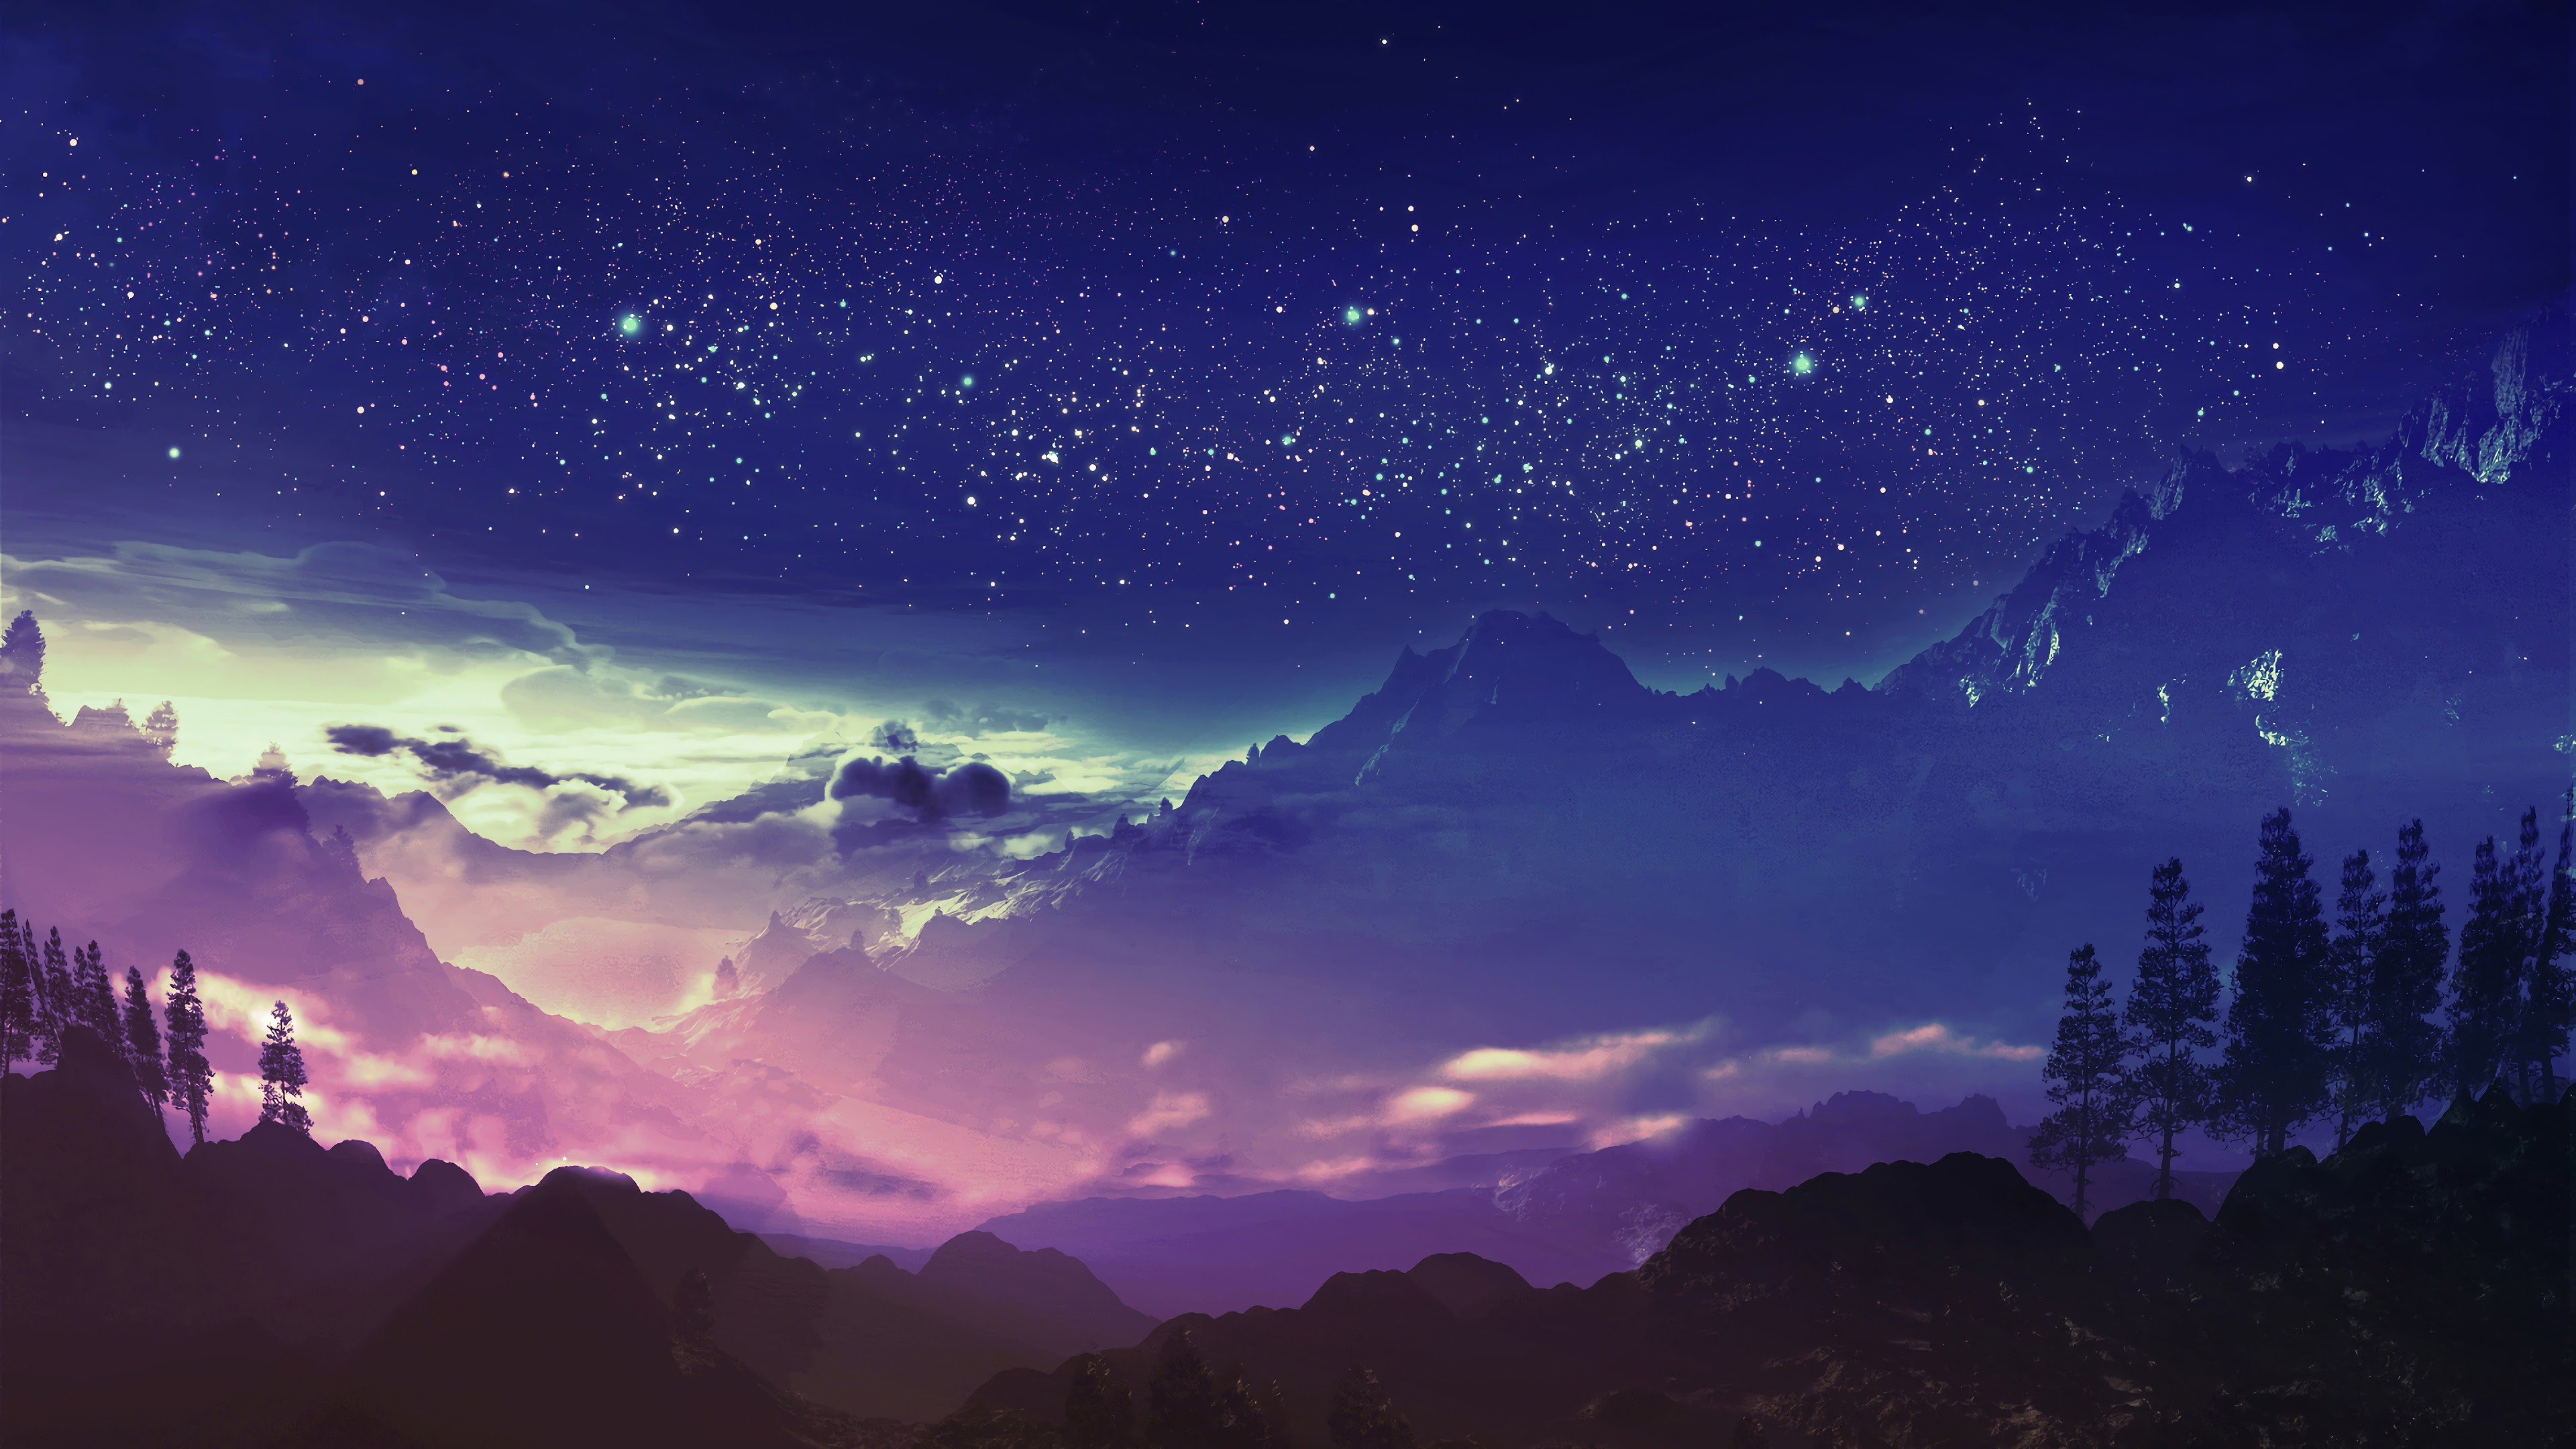 Magical Anime Fantasy Purple Mountains Landscape - Genshin Impact Symbol  Element Electro Lightning - Inazuma